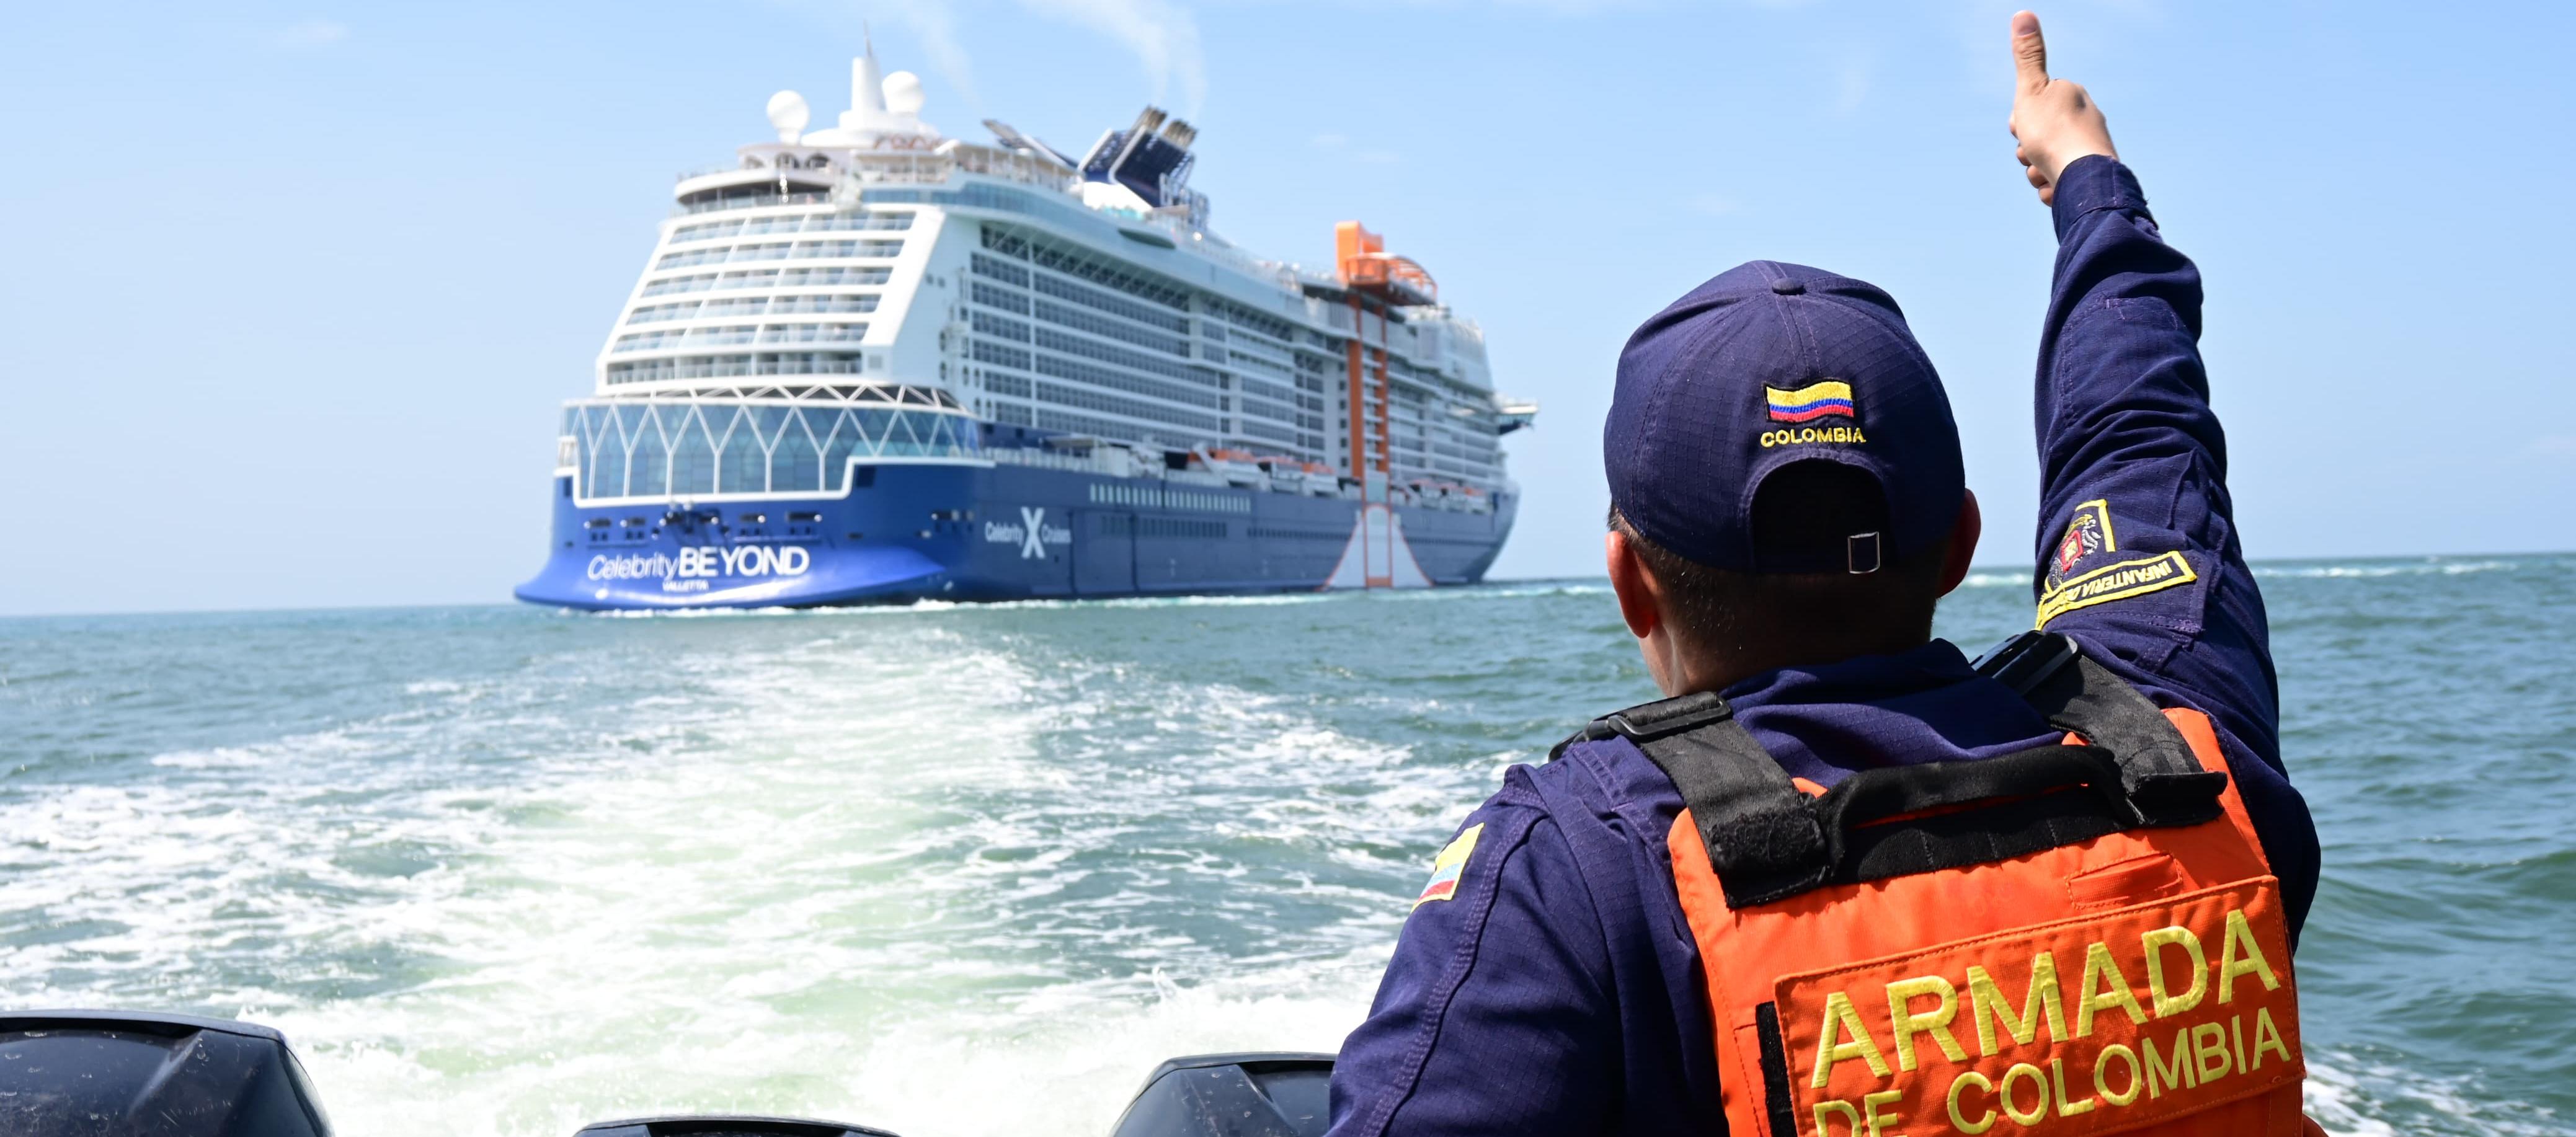 Personal a la Armada minutos antes de evacuar a las dos turistas del crucero crucero ‘Celebrity Beyon'